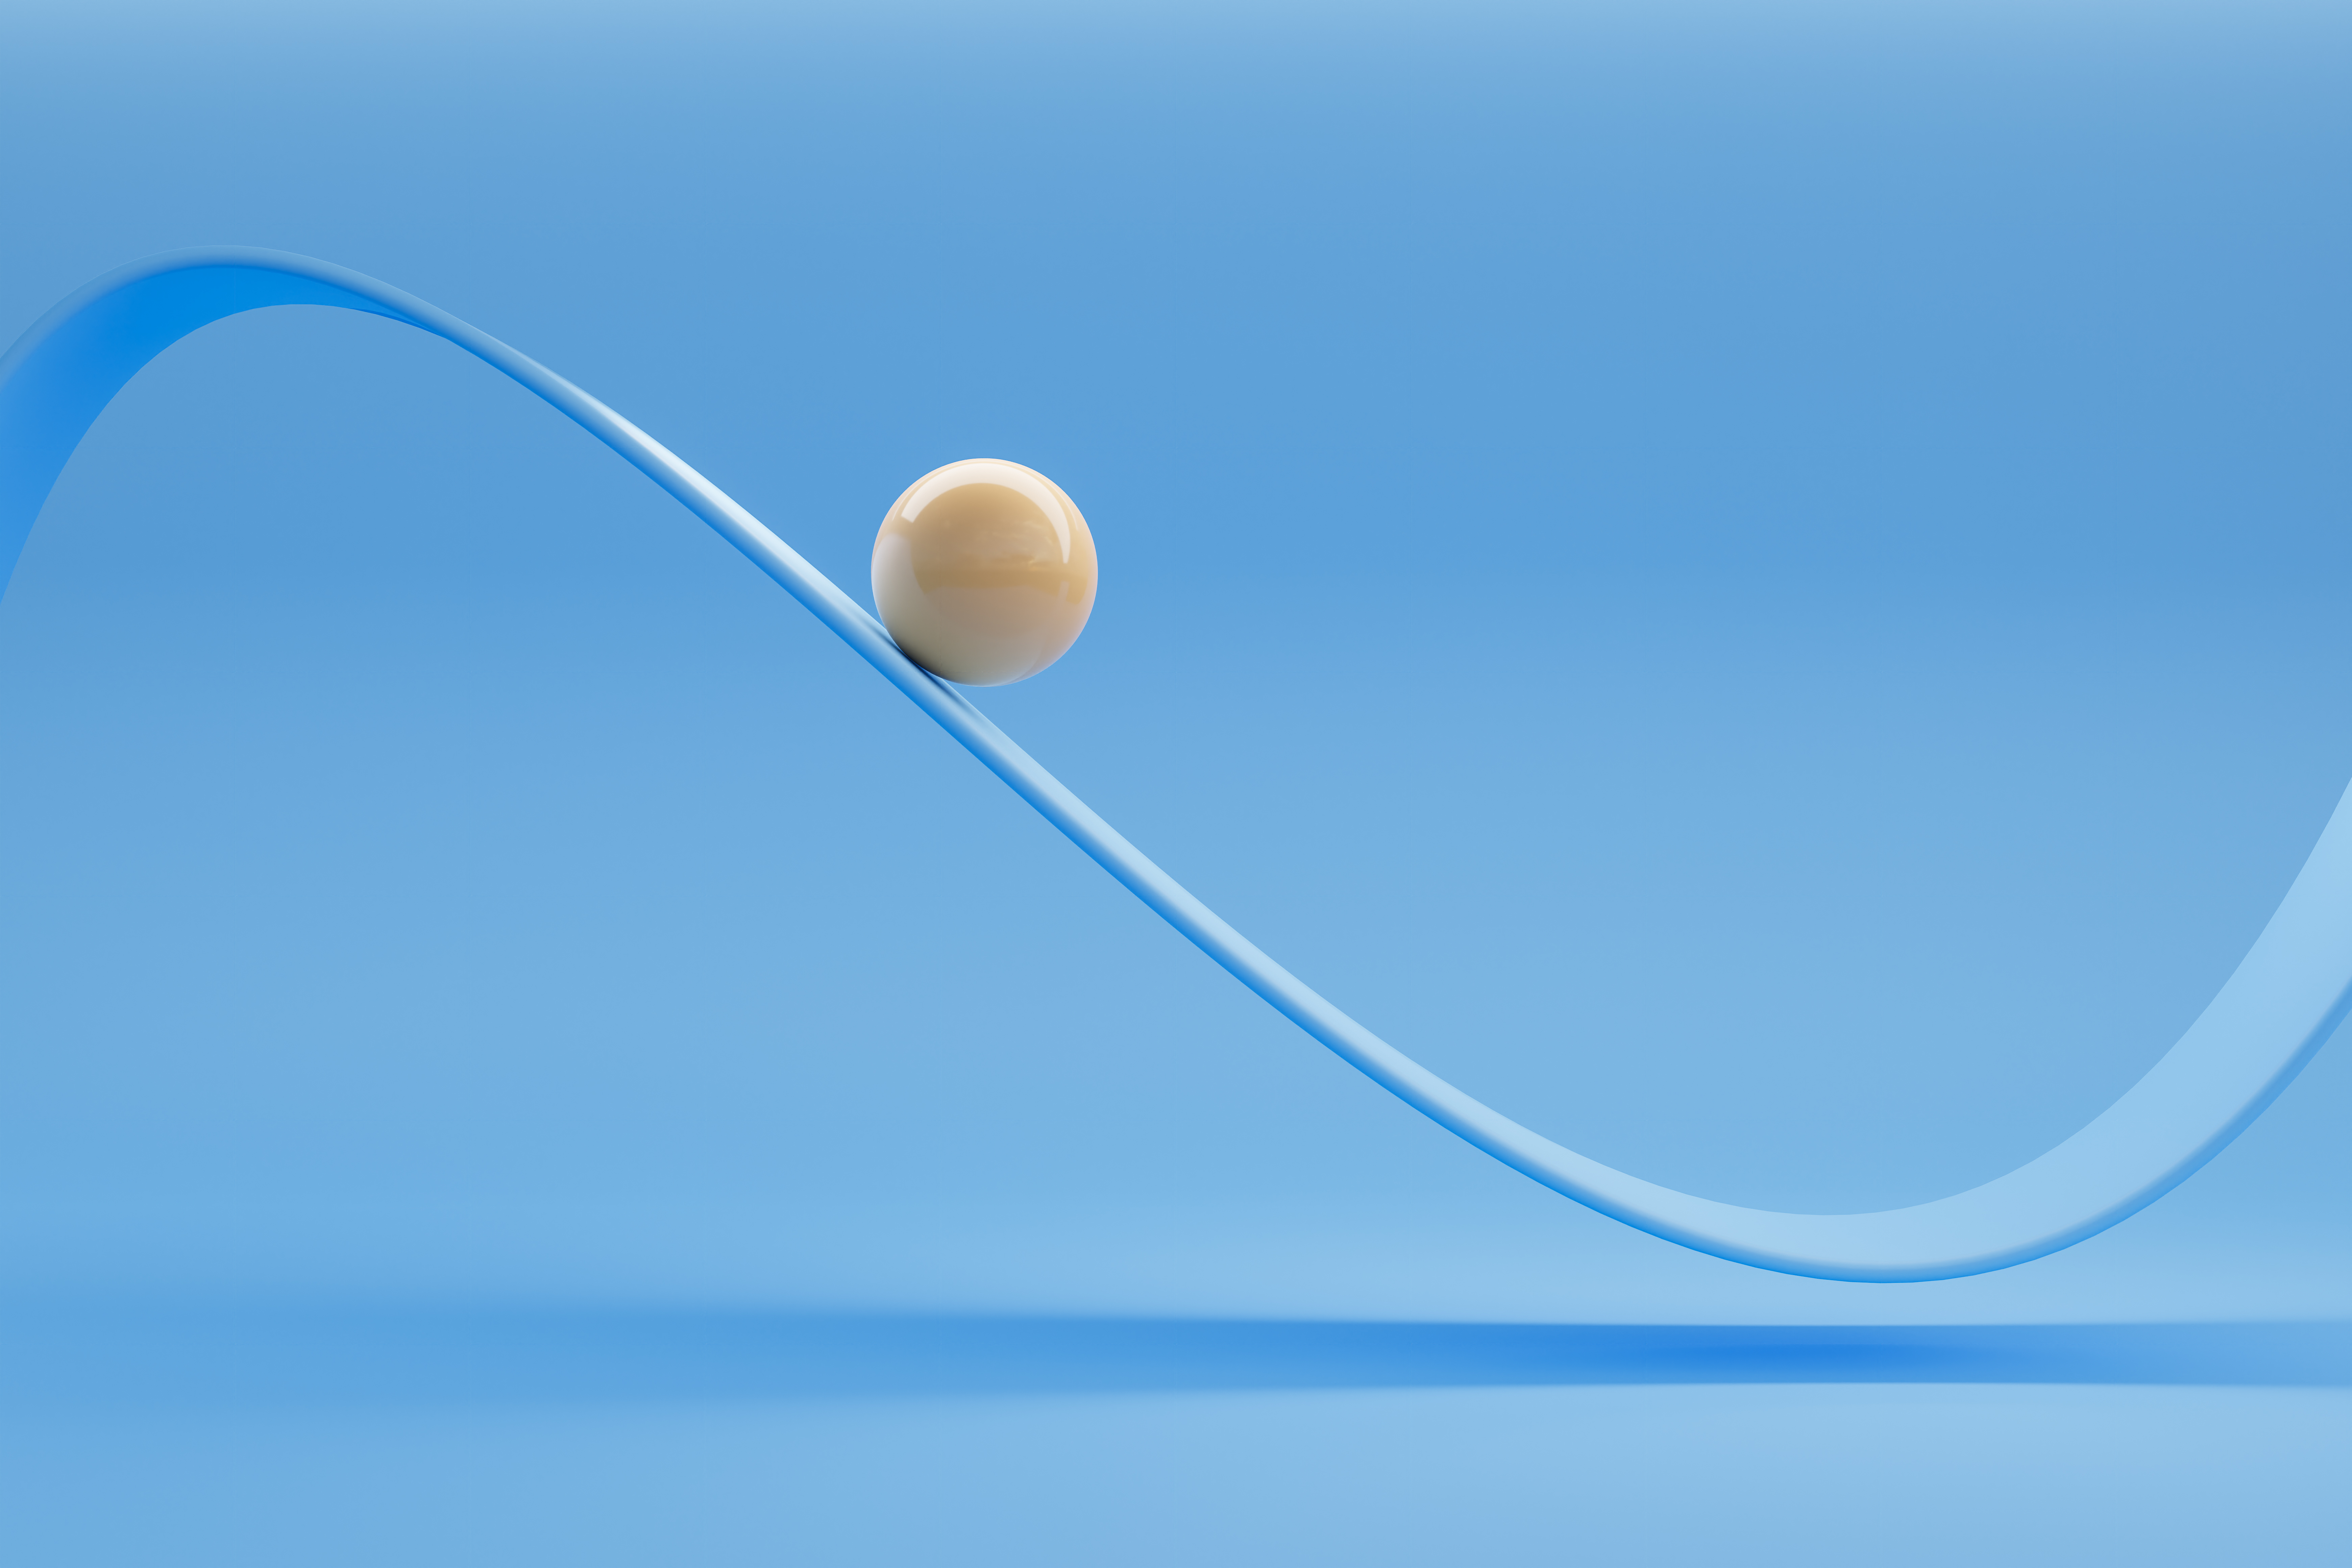 صورة لكرة خزفية بيضاء لامعة تتحرك على طول منحنى متأرجح على خلفية زرقاء.